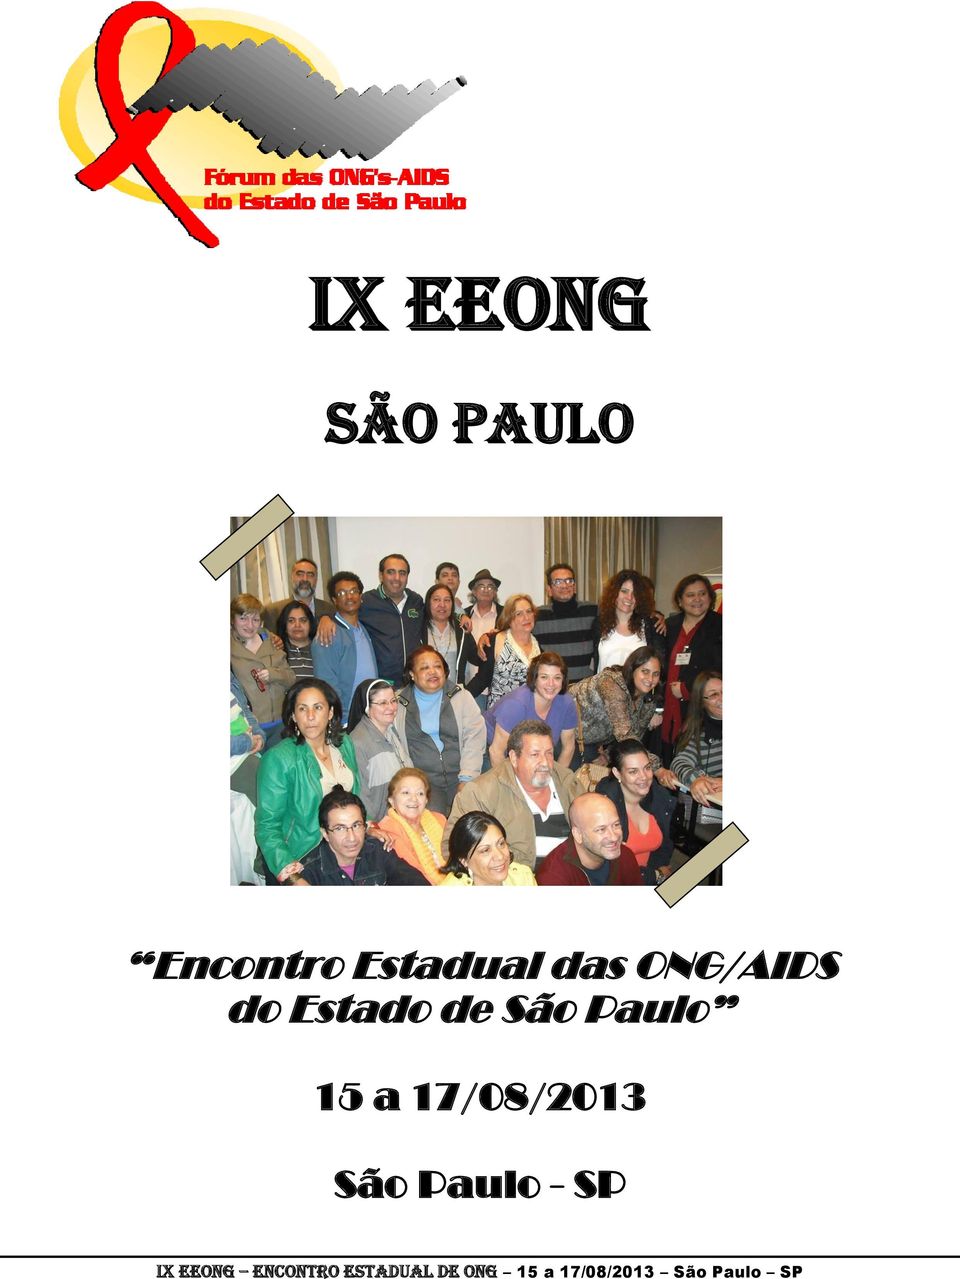 ONG/AIDS do Estado de São